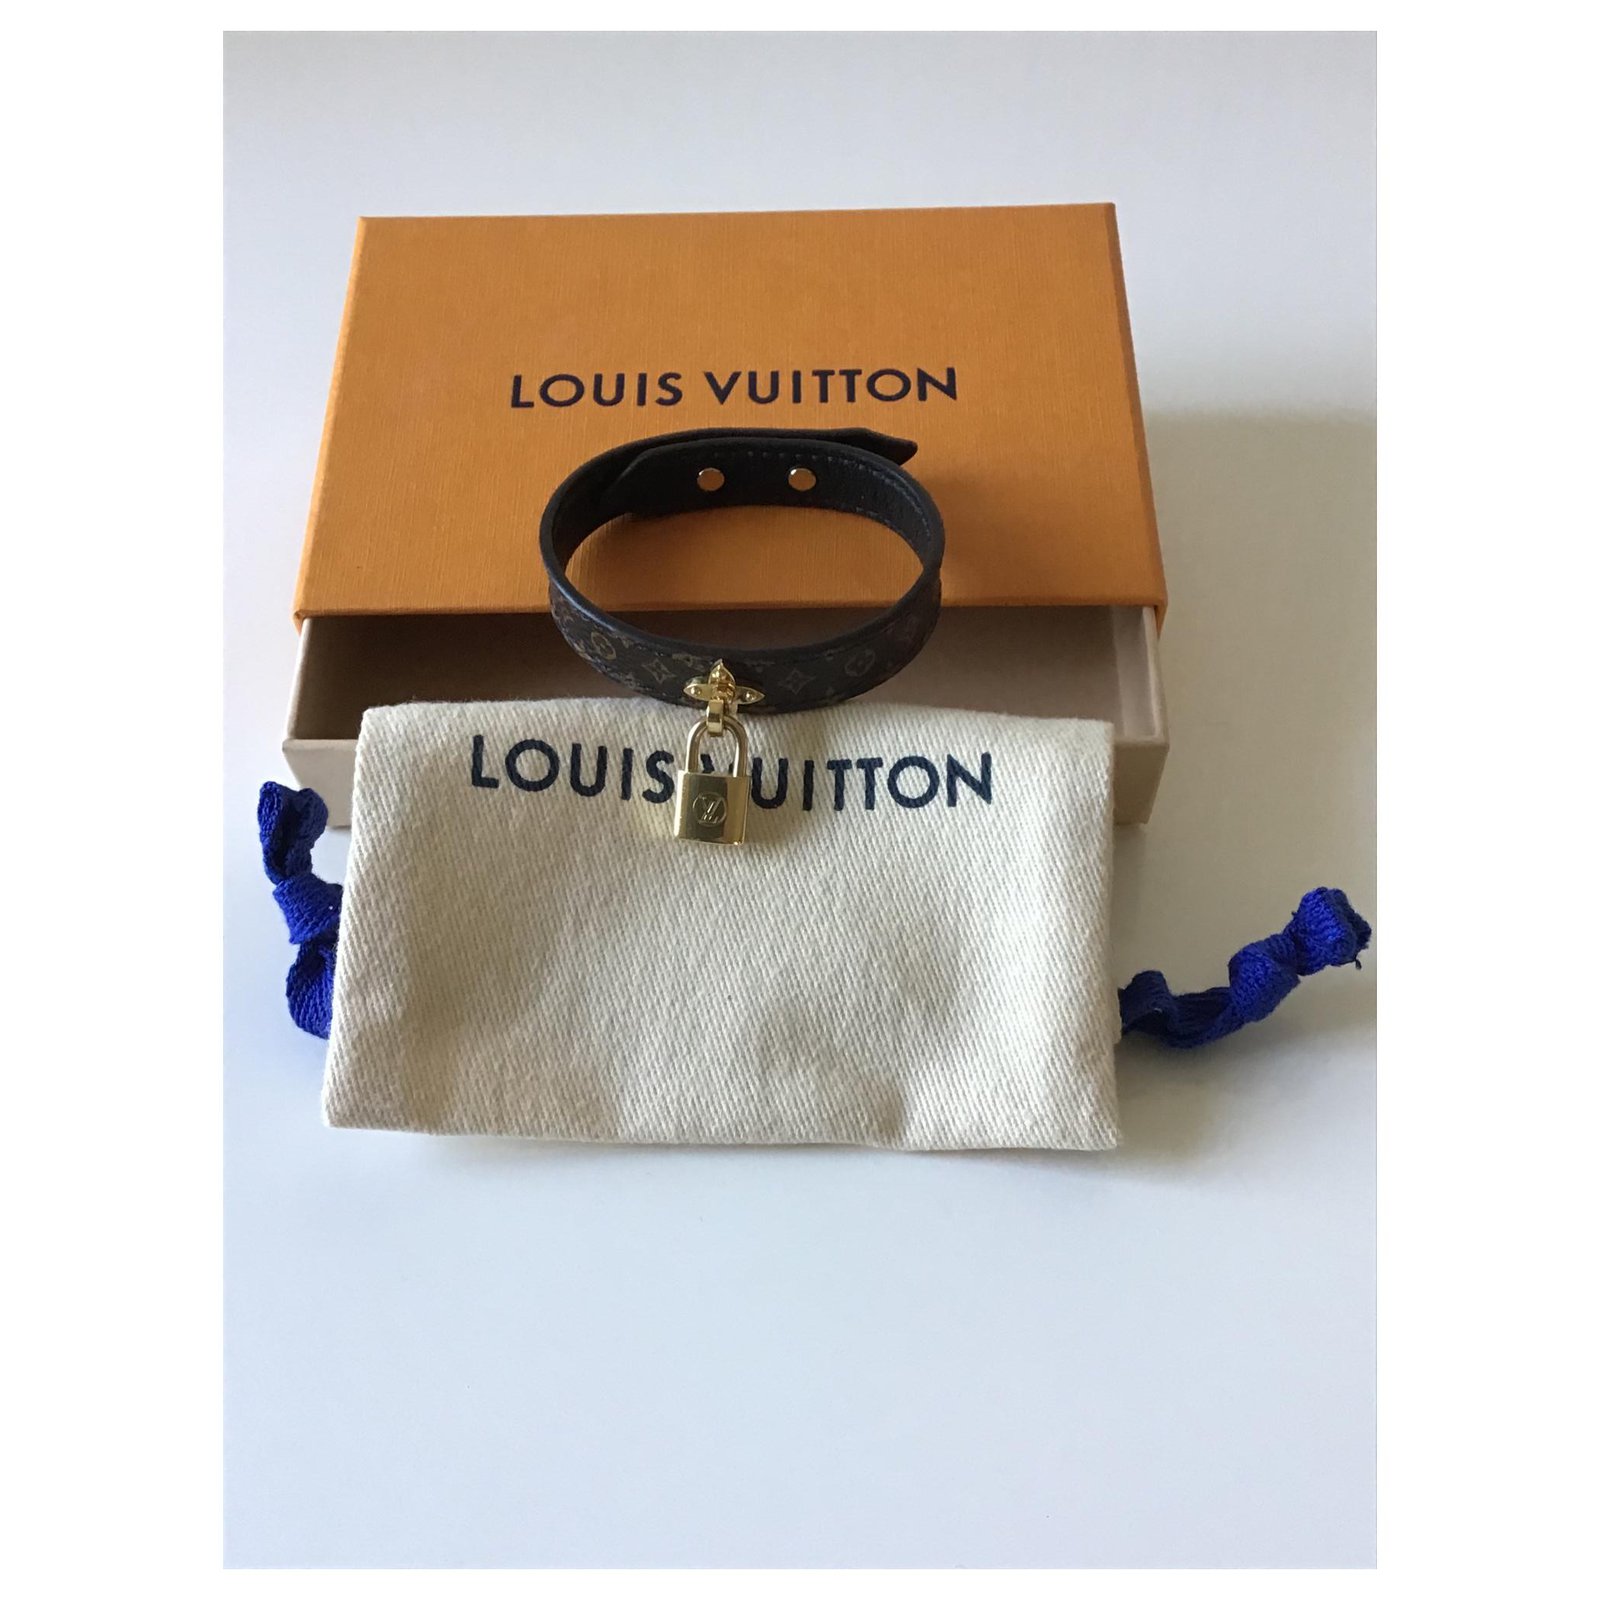 Louis Vuitton ha creado una nueva línea de joyería llamada Louis Vuitton  Lockit Collection. Inspirado por los canda…